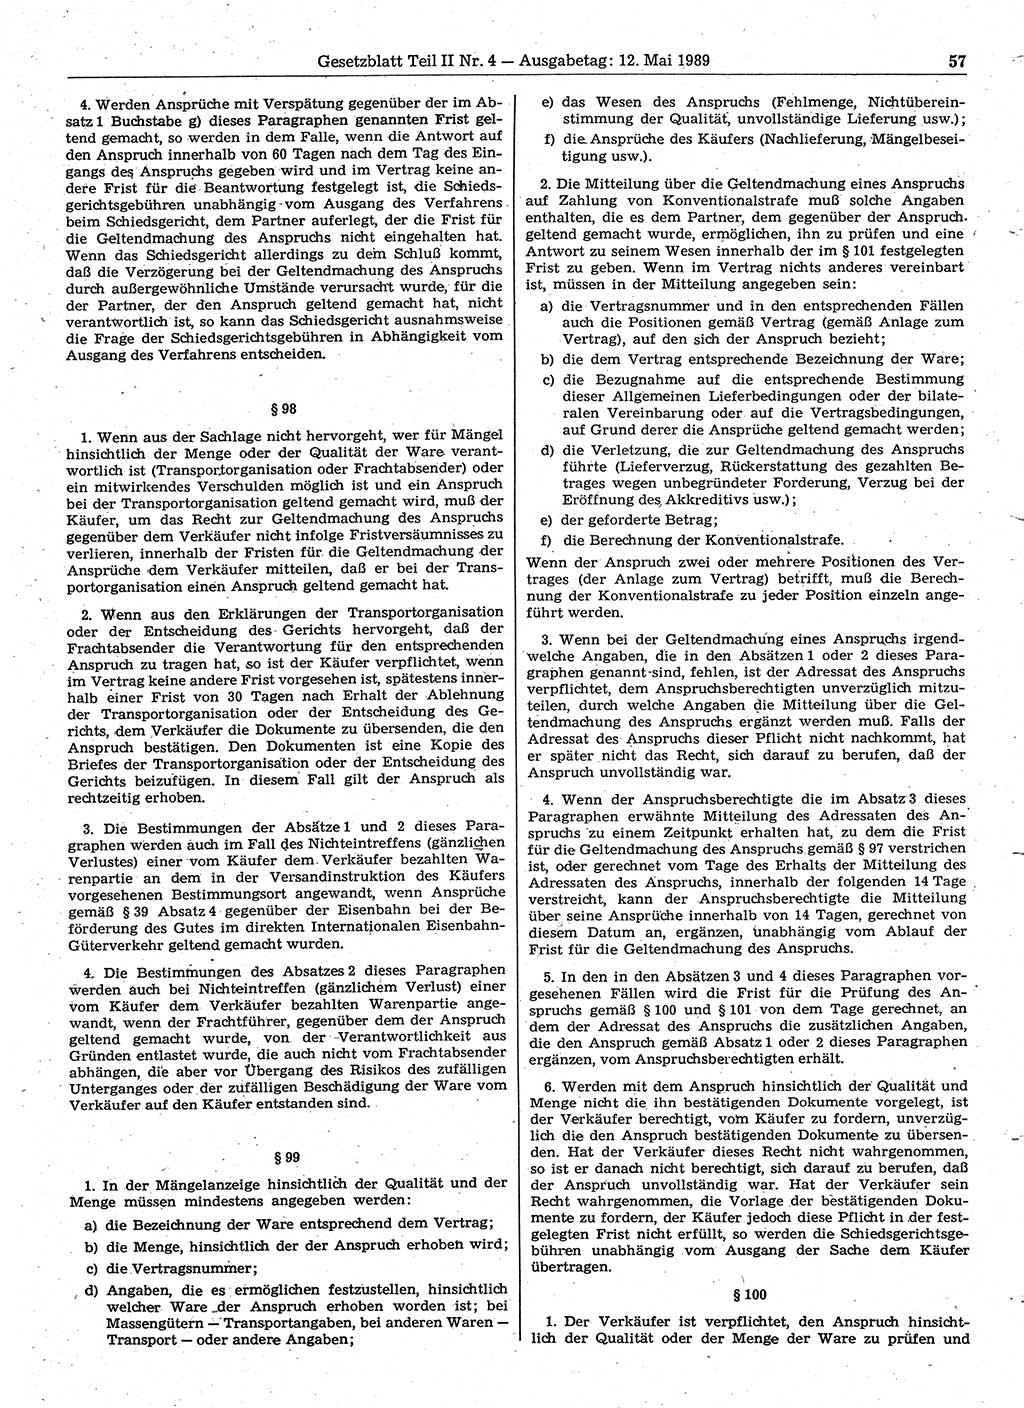 Gesetzblatt (GBl.) der Deutschen Demokratischen Republik (DDR) Teil ⅠⅠ 1989, Seite 57 (GBl. DDR ⅠⅠ 1989, S. 57)